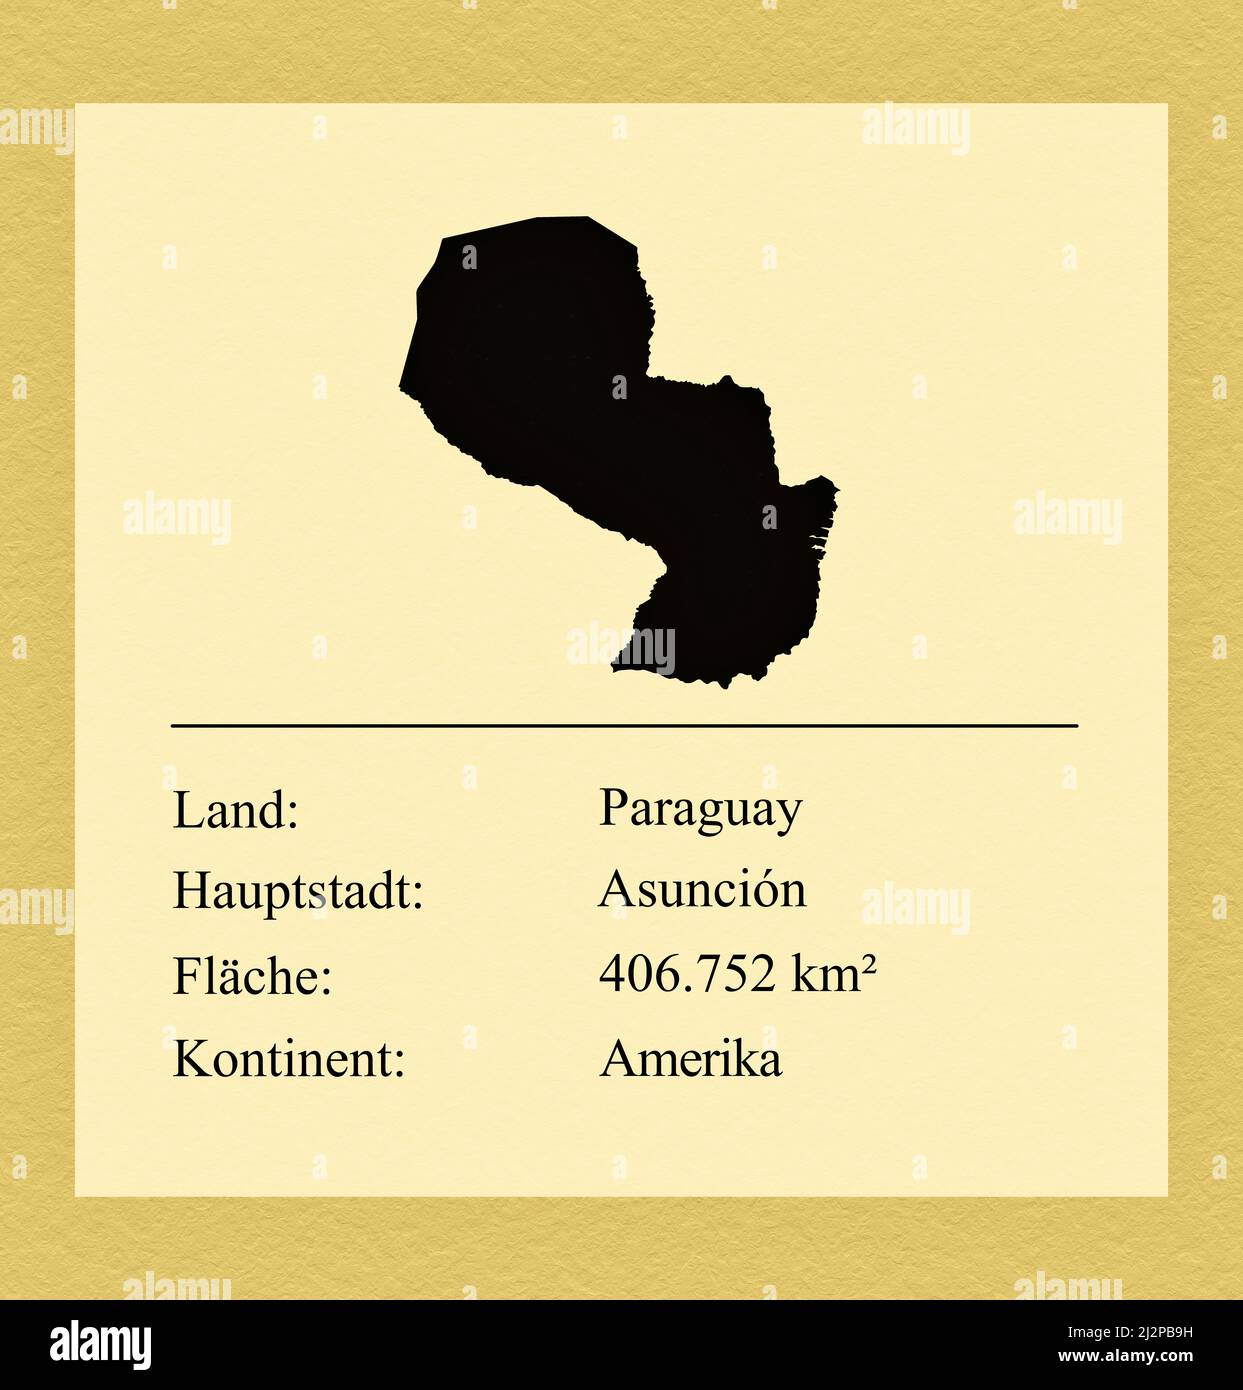 Umrisse des Landes Paraguay, darunter ein kleiner Steckbrief mit Ländernamen, Hauptstadt, Fläche und Kontinent Foto Stock